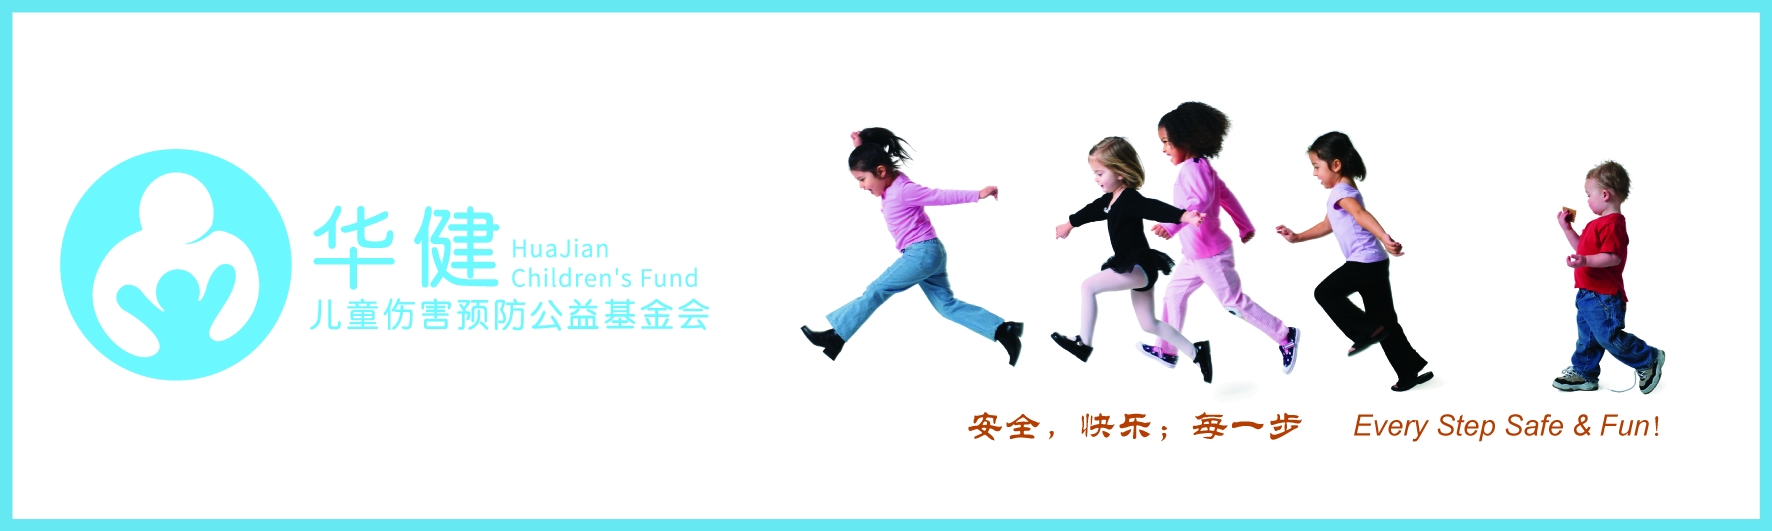 20170221华建儿童伤害预防公益基金会logo--官网